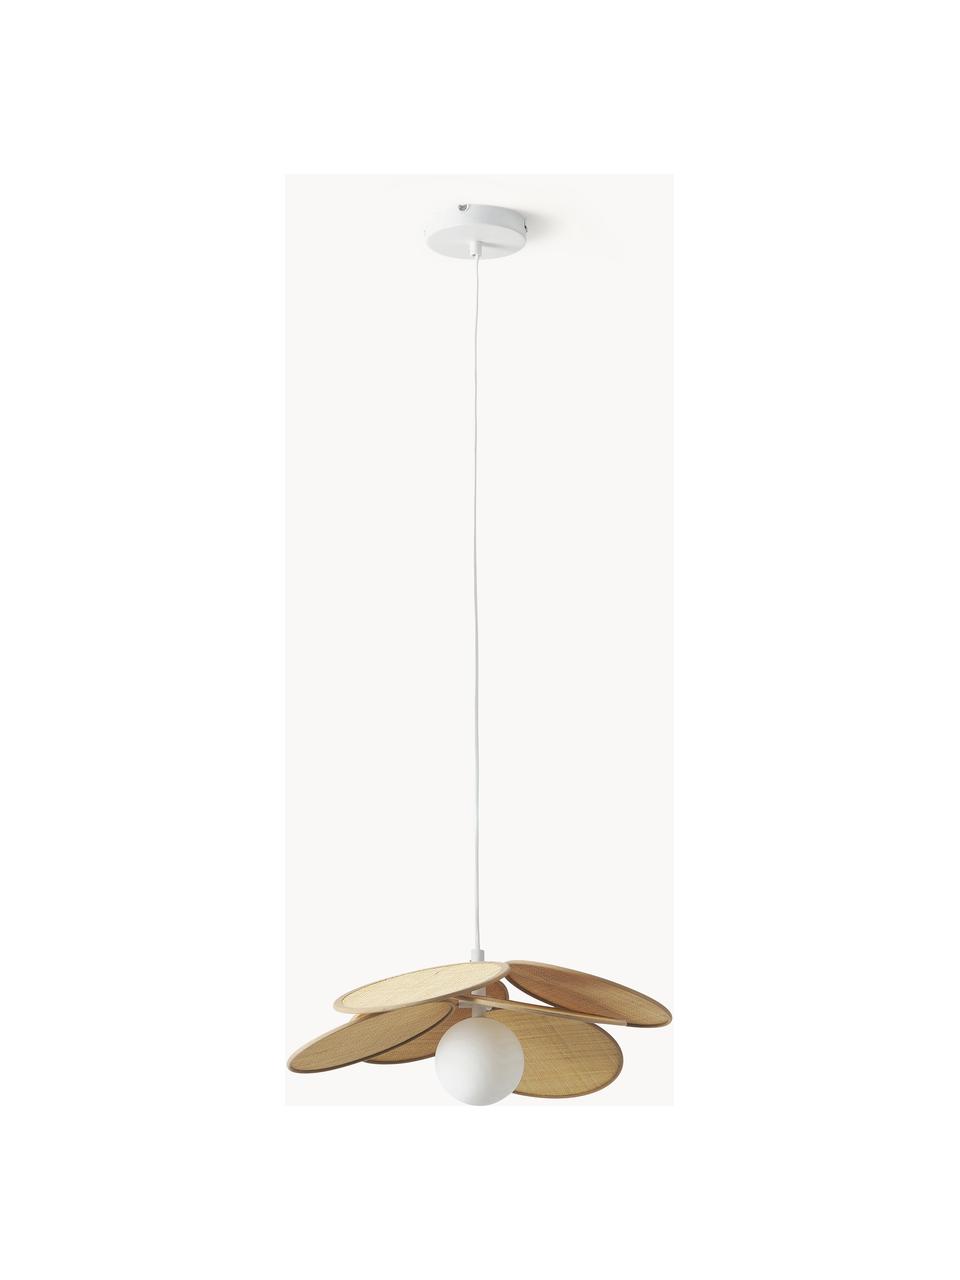 Hanglamp Milani met decoratie uit natuurlijke vezels, Decoratie: bastgras, Beige, wit, Ø 64 x H 66 cm